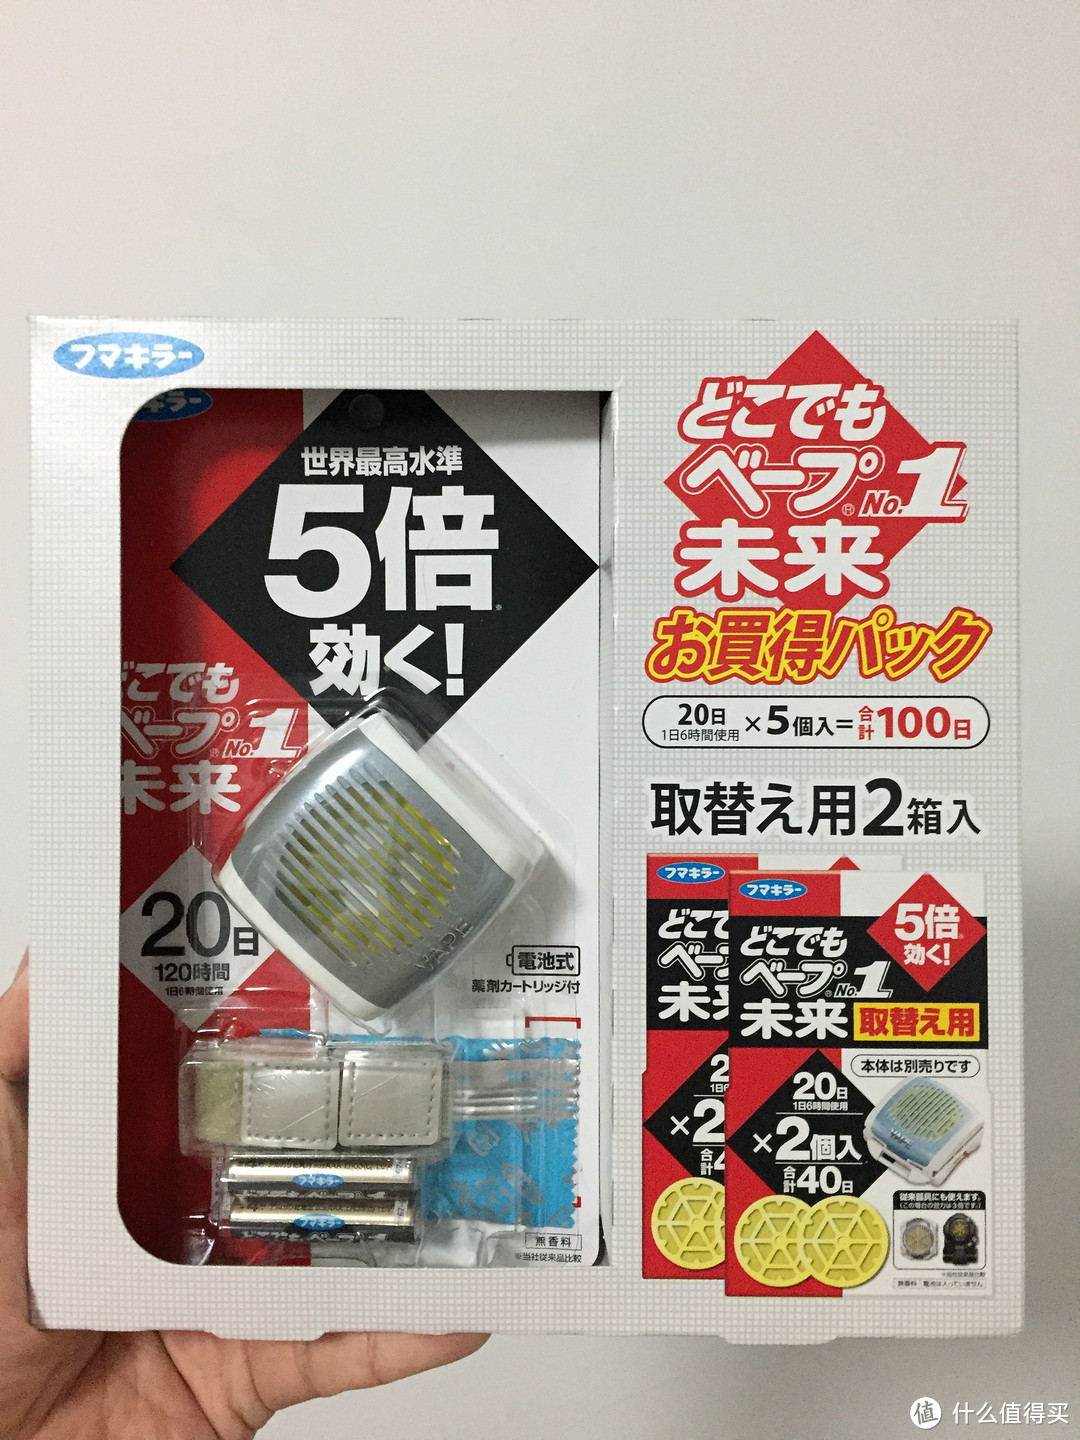 日本VAPE电子驱蚊手表开箱晒单